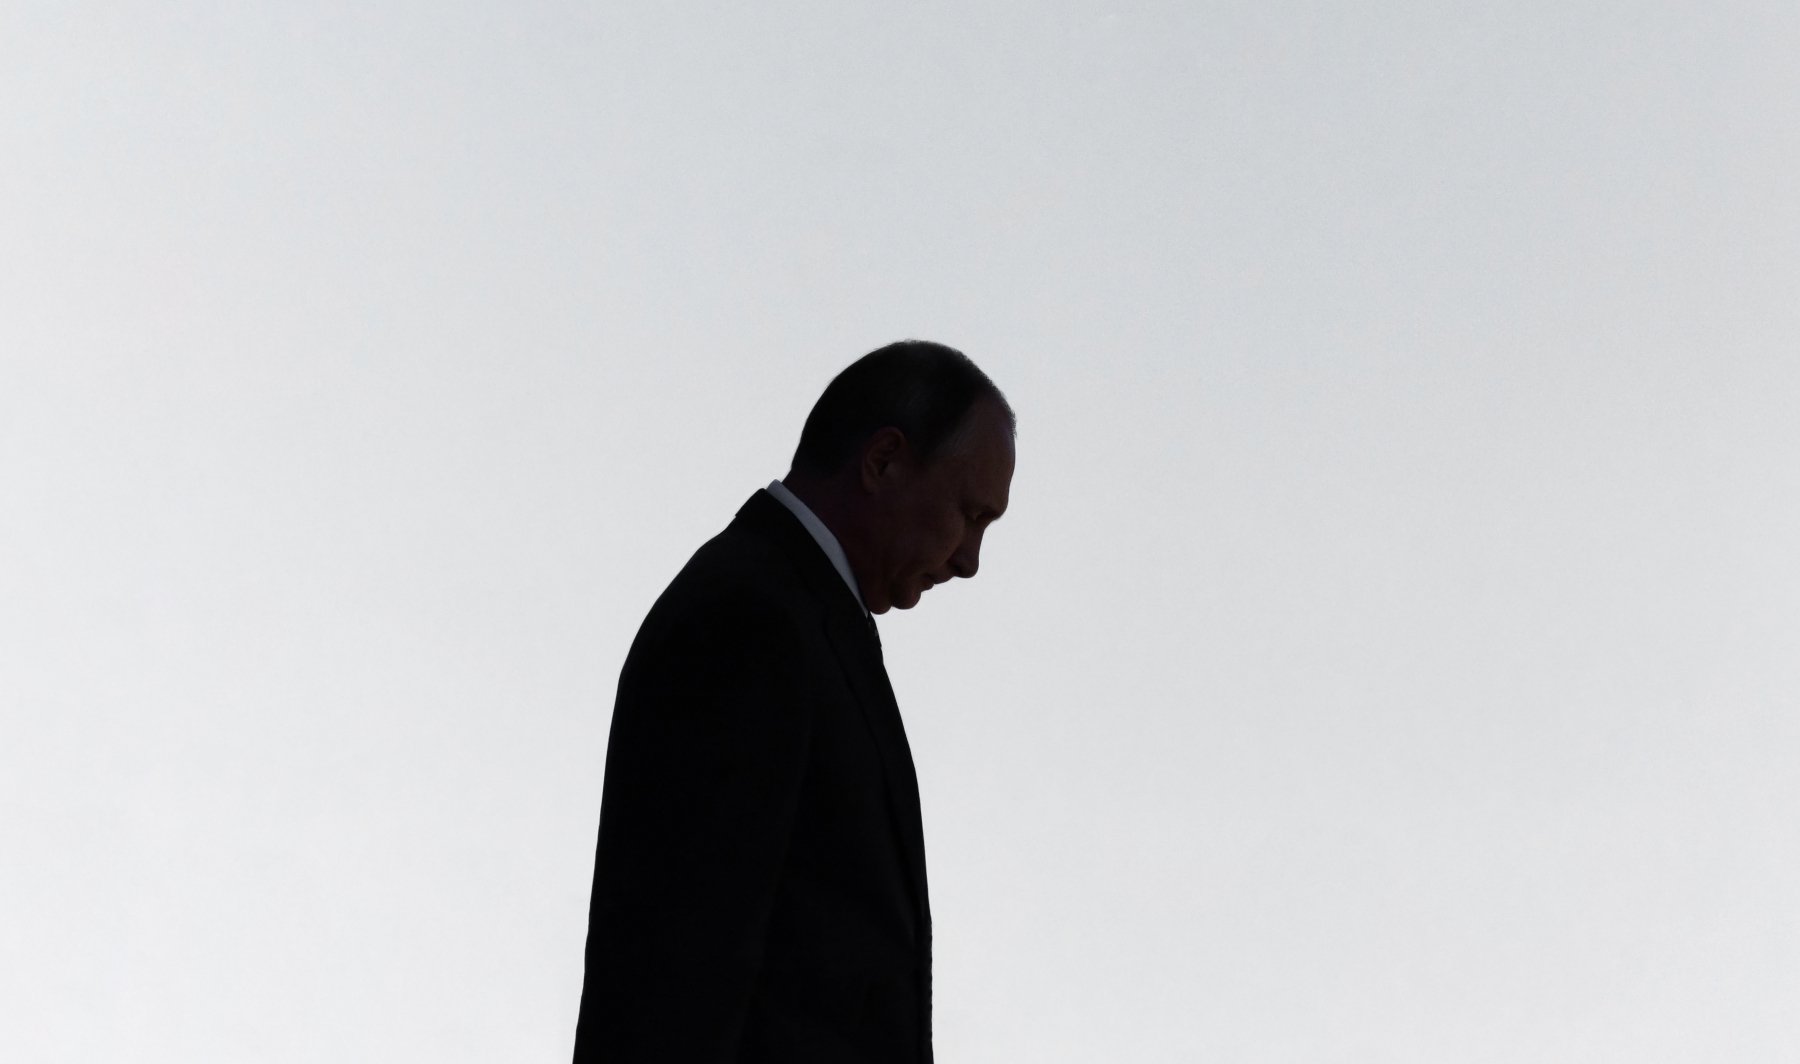 Η κίνηση-ματ του Putin που μπορεί να φέρει κι άλλα προβλήματα στην Ευρώπη